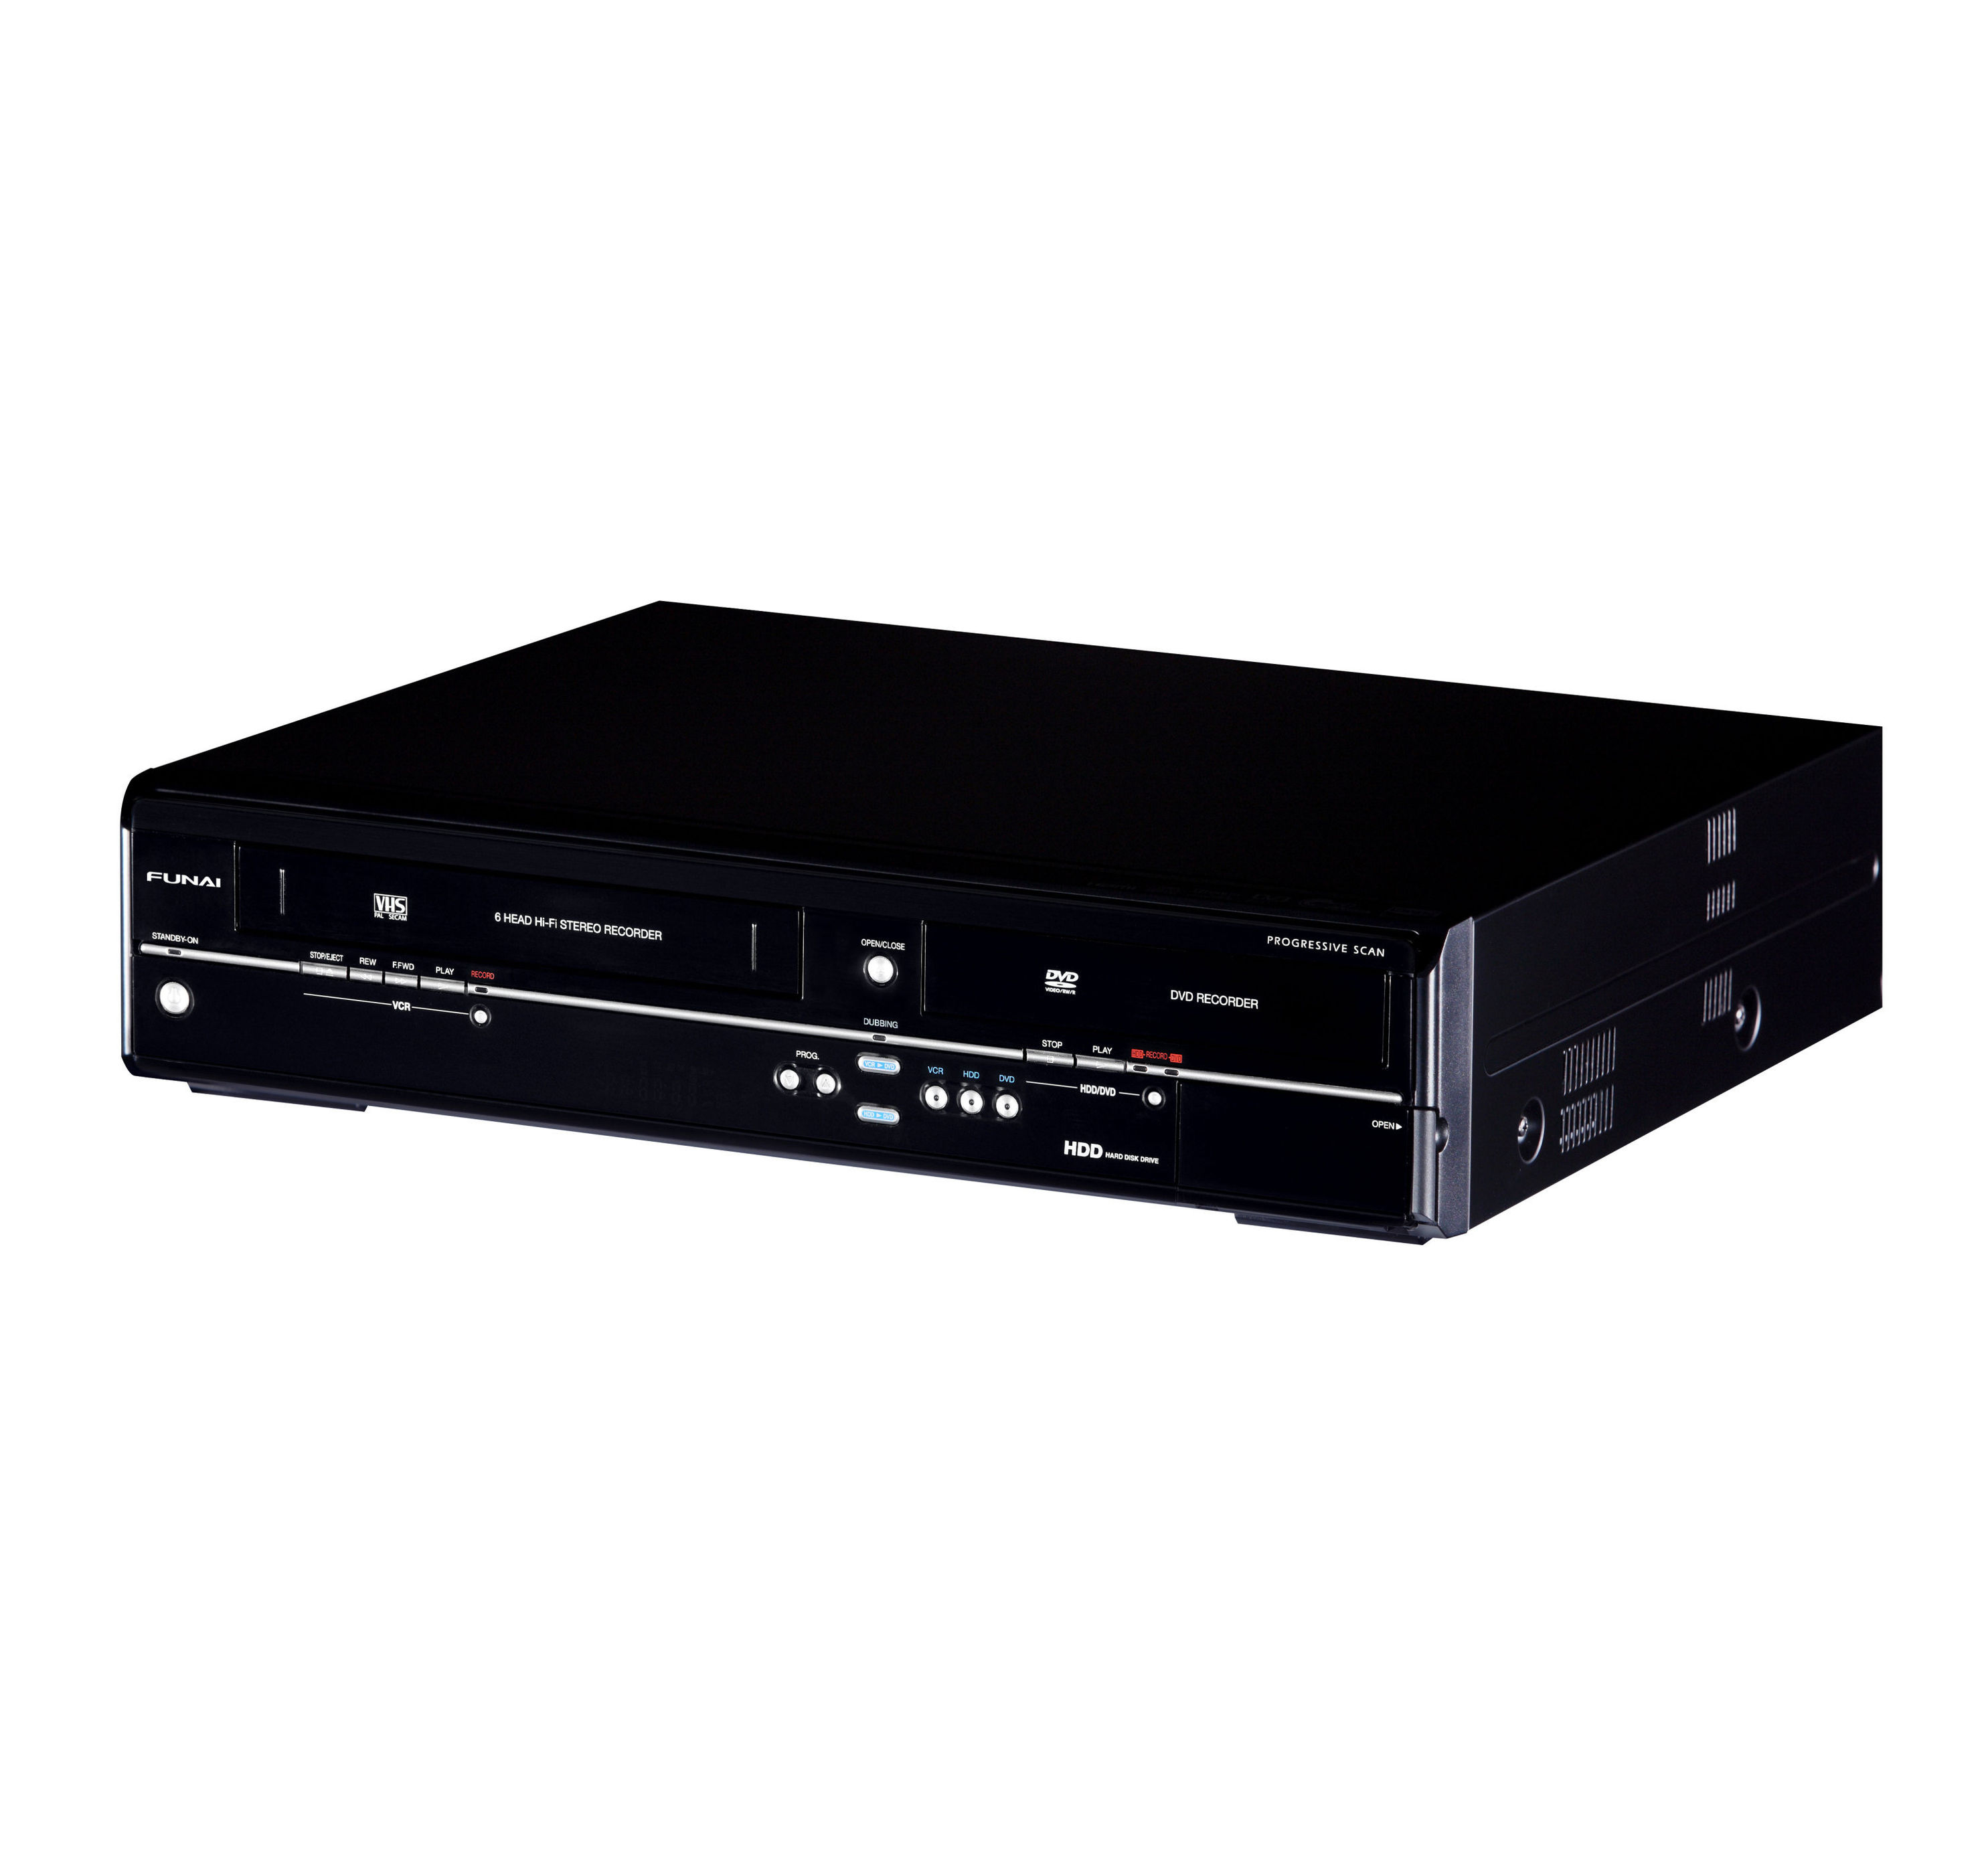 Funai 3 in 1 DVD-, Video- und Festplattenrekorder 500GB mit DVB-T-Tuner -  Kommentare - Weltbild.at